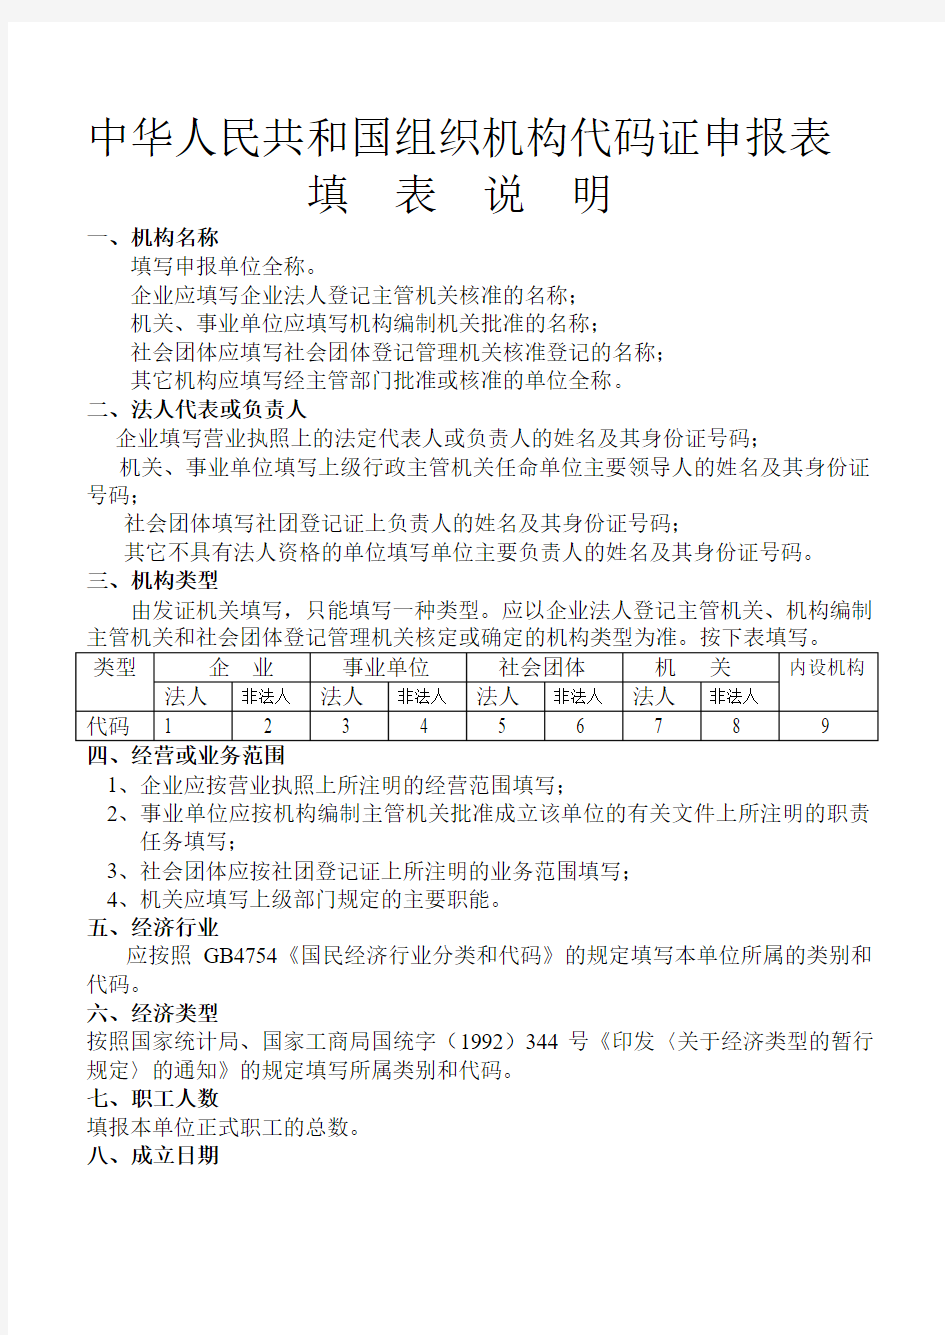 中华人民共和国组织机构代码证申报表